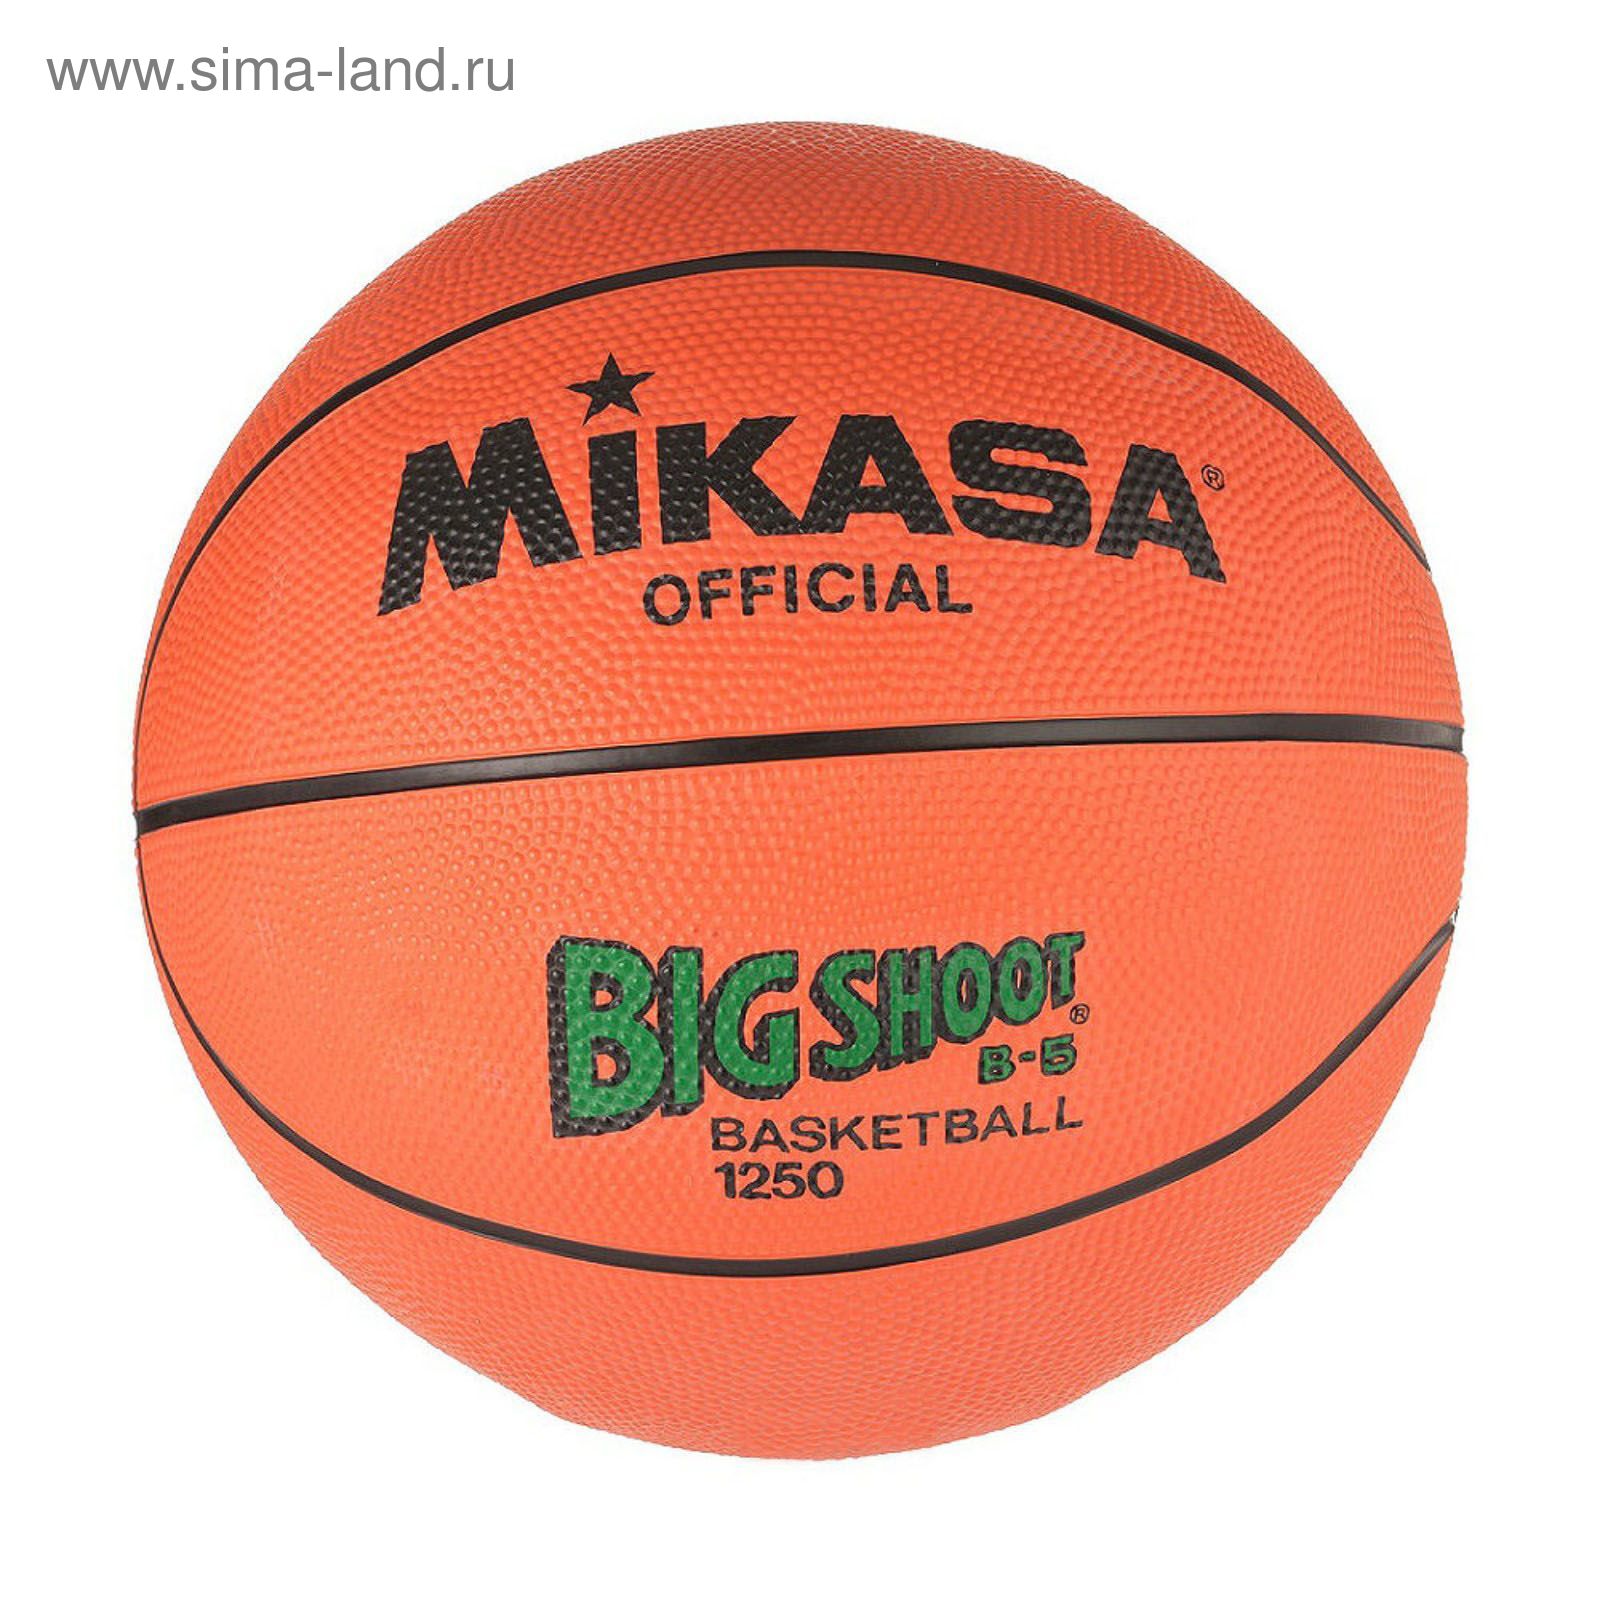 Мяч баскетбольный Mikasa 1250, размер 5